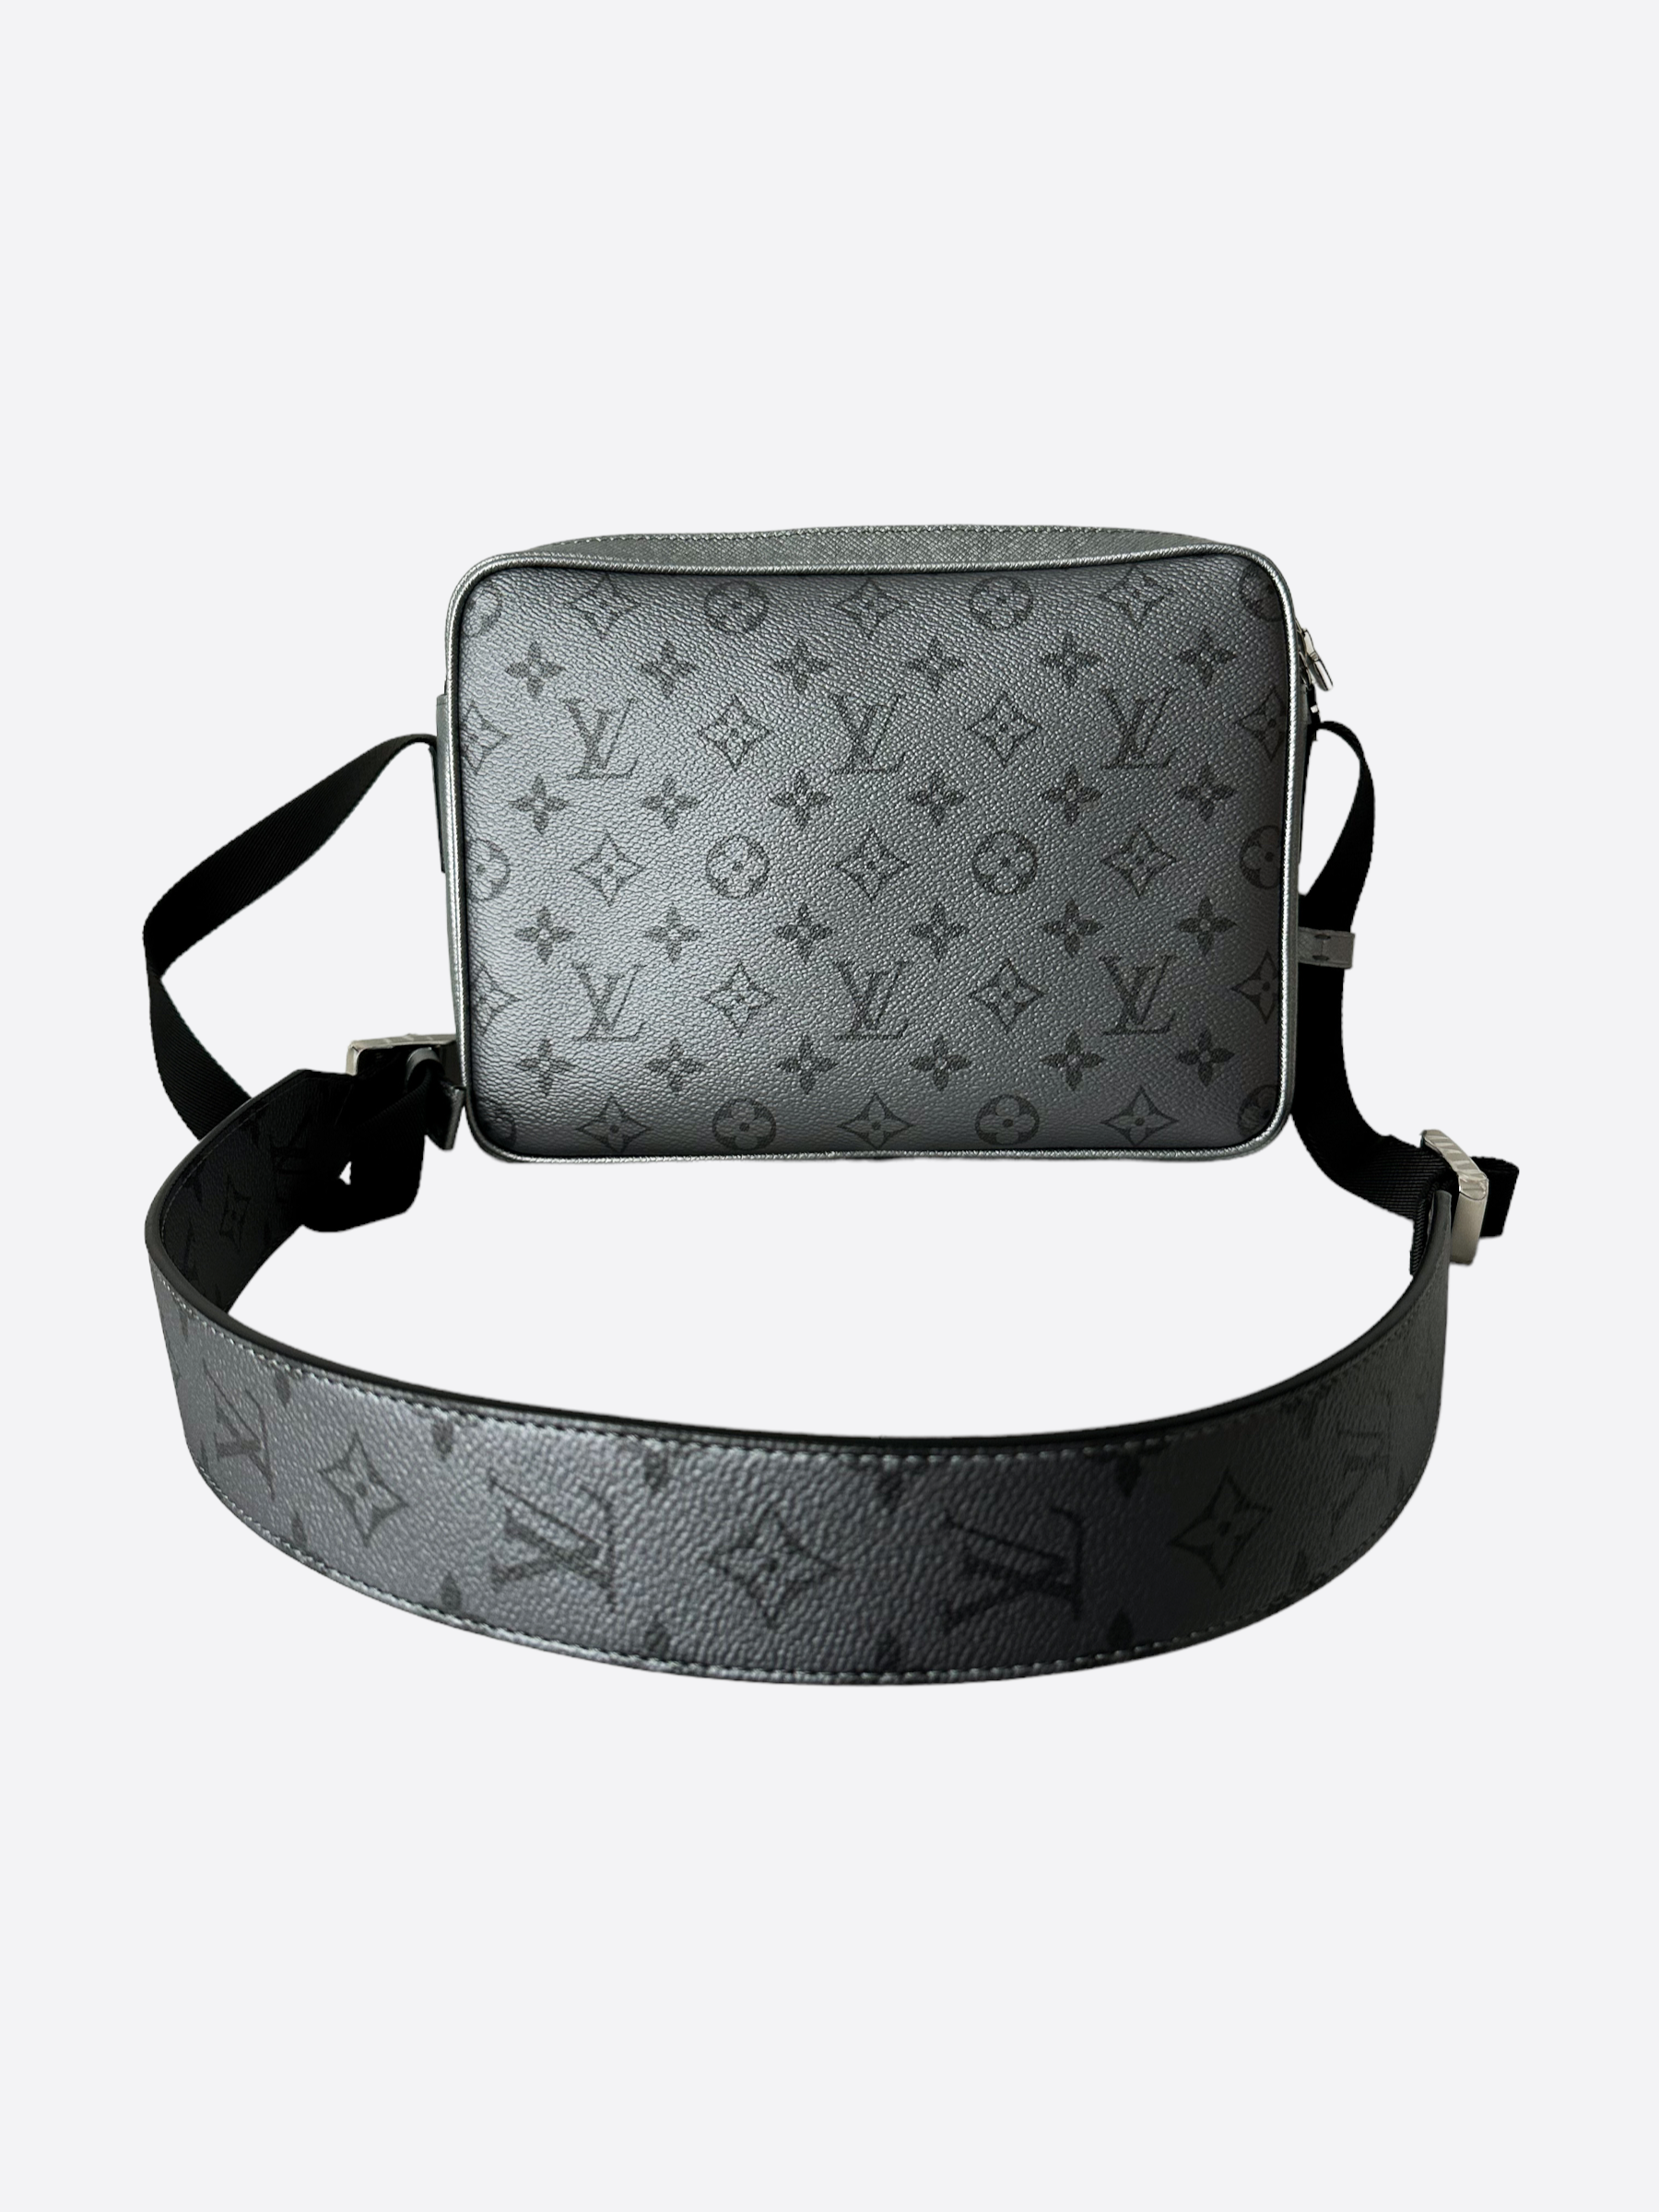 Louis Vuitton Silver Monogram Outdoor Messenger Bag